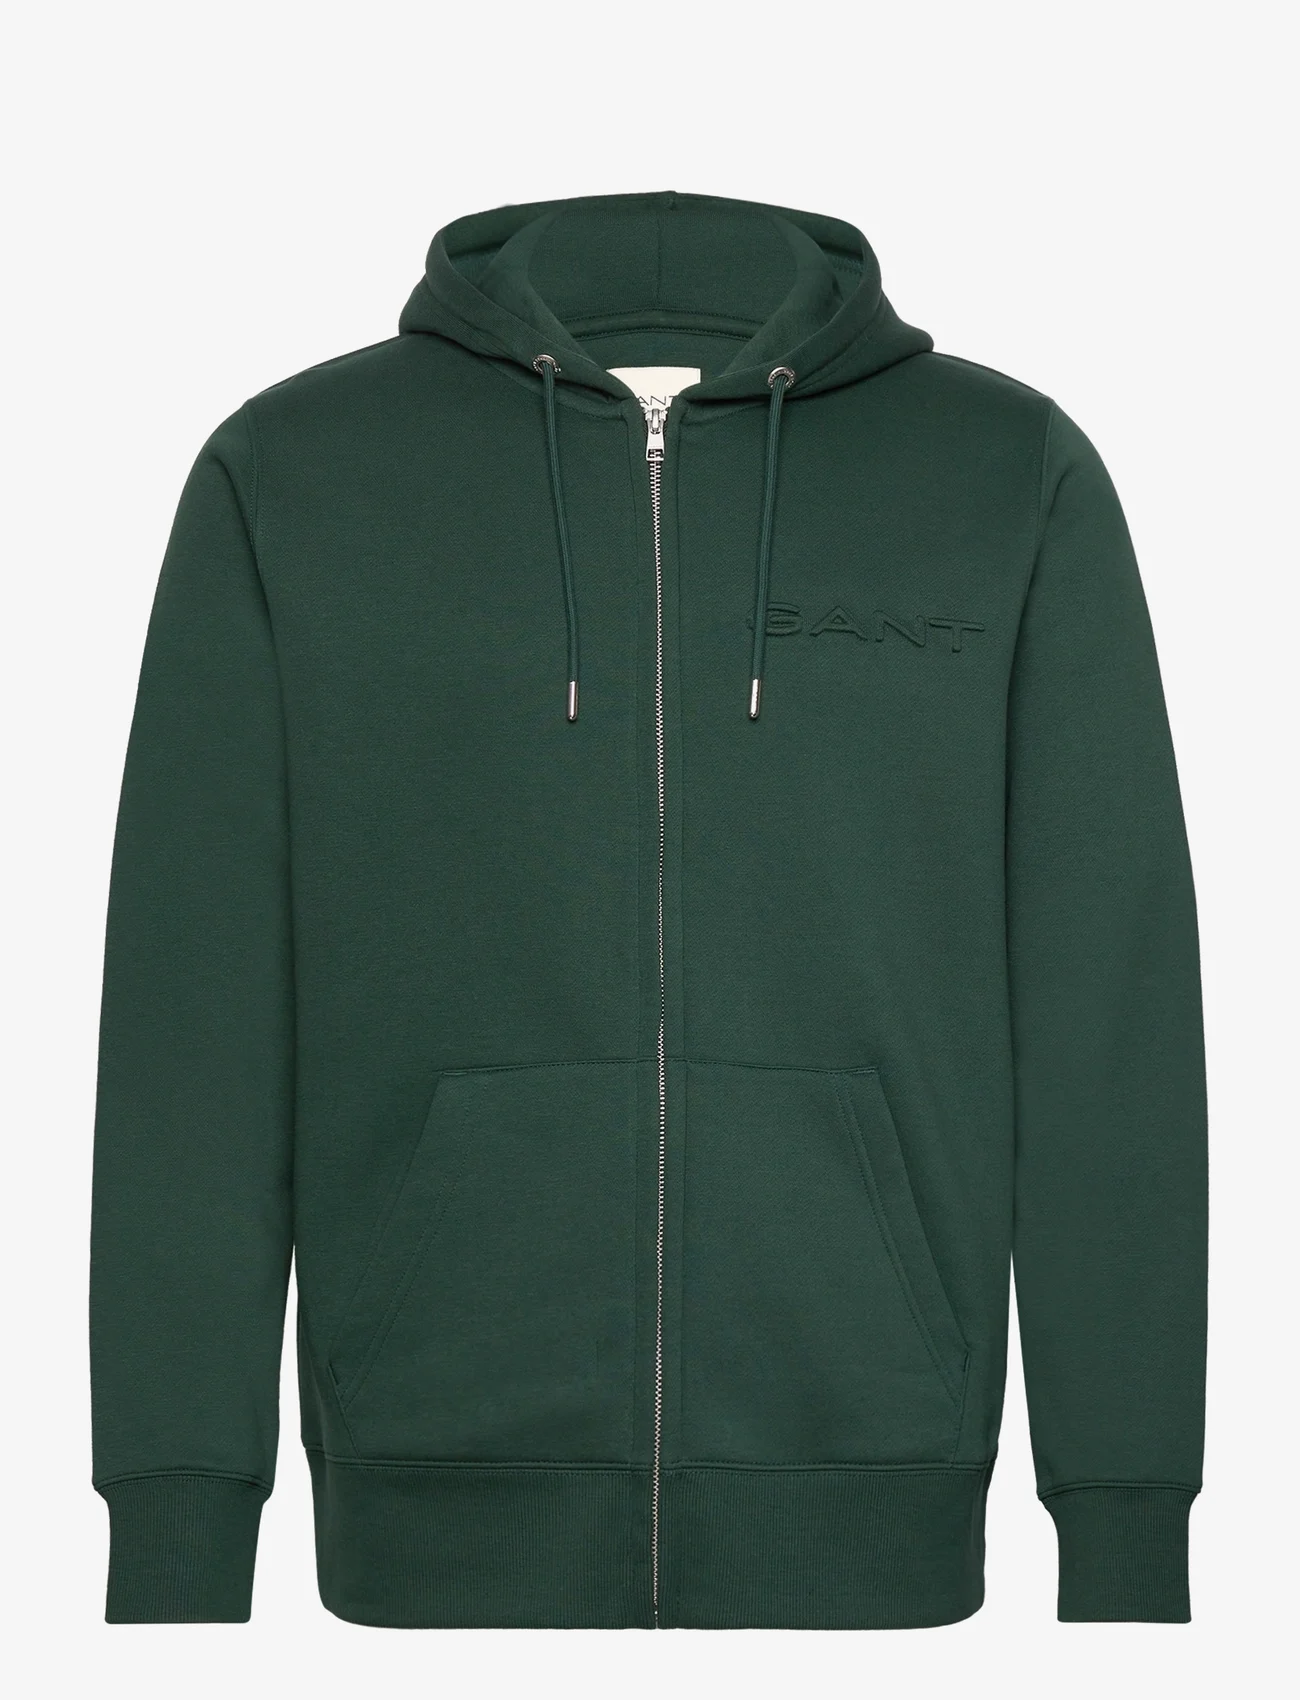 GANT - EMBOSSED FULL ZIP HOODIE - hoodies - tartan green - 0